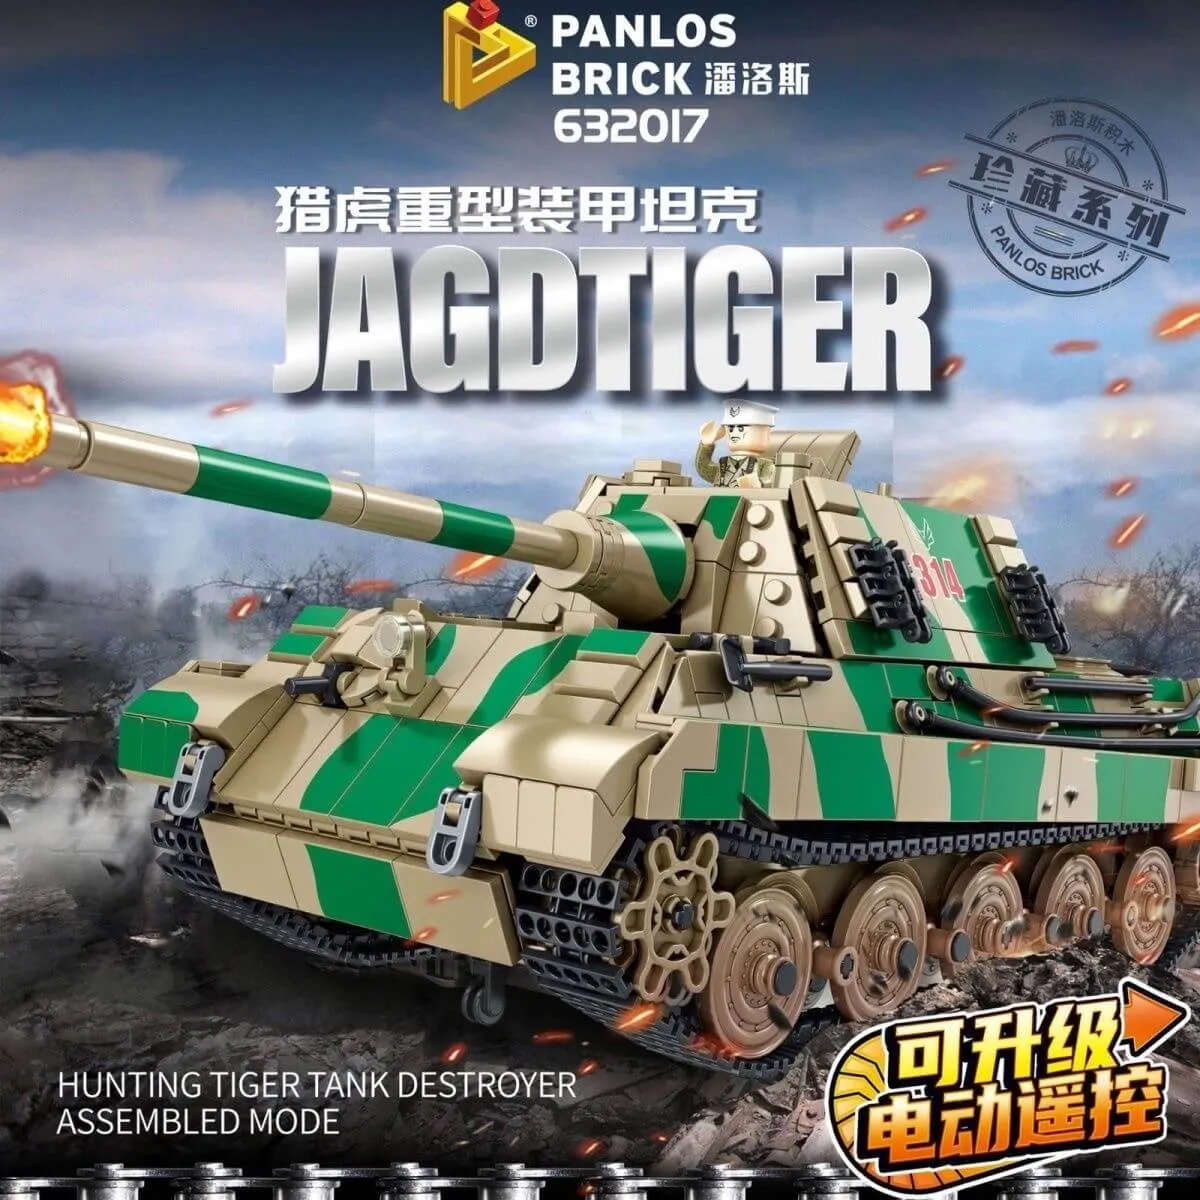 Panlos - Jagdtiger Jagdpanzer | Set 632017